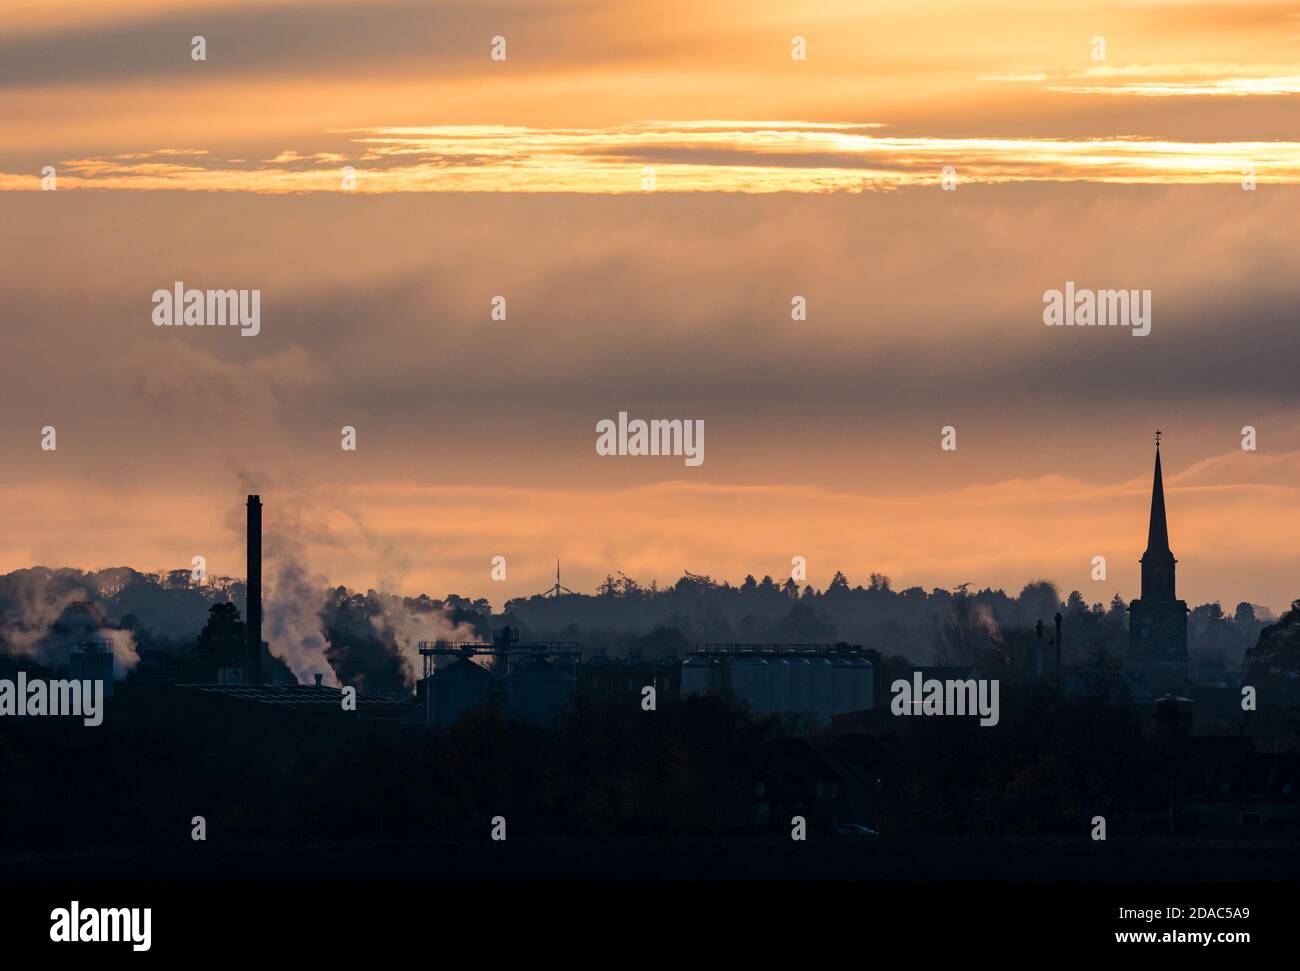 Horizon au coucher du soleil avec la flèche de l'hôtel de ville de Haddington et les silhouettes de l'usine de pur malt, East Lothian, Écosse, Royaume-Uni Banque D'Images